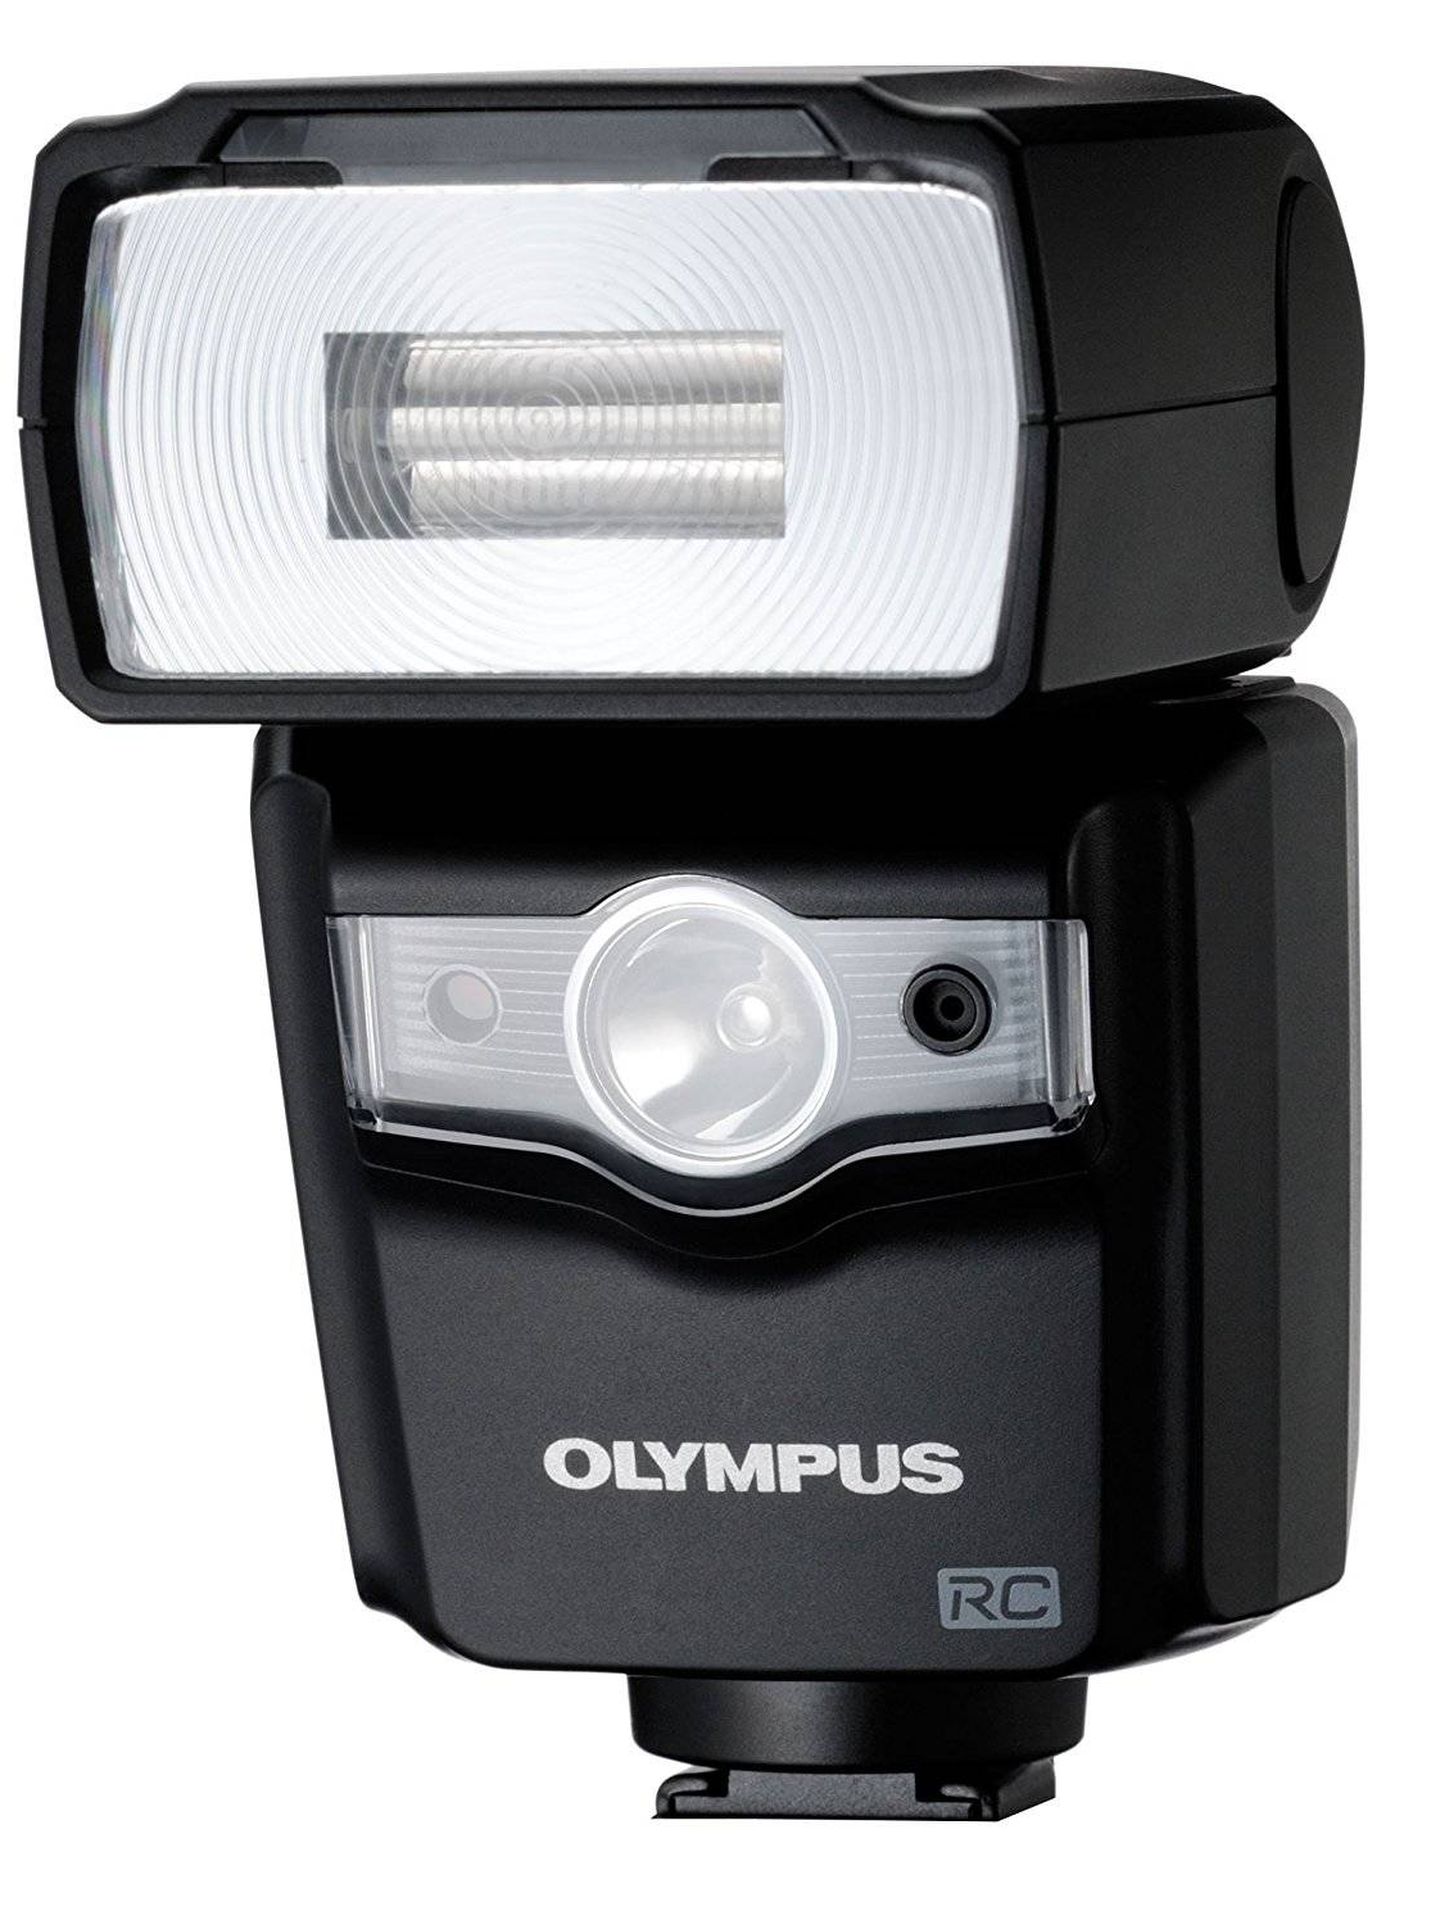 El Olympus FL-600R es un ‘flash’ de alta gama. Para empezar en la fotografía podemos adquirir uno mucho más modesto. (Imagen: Amazon)